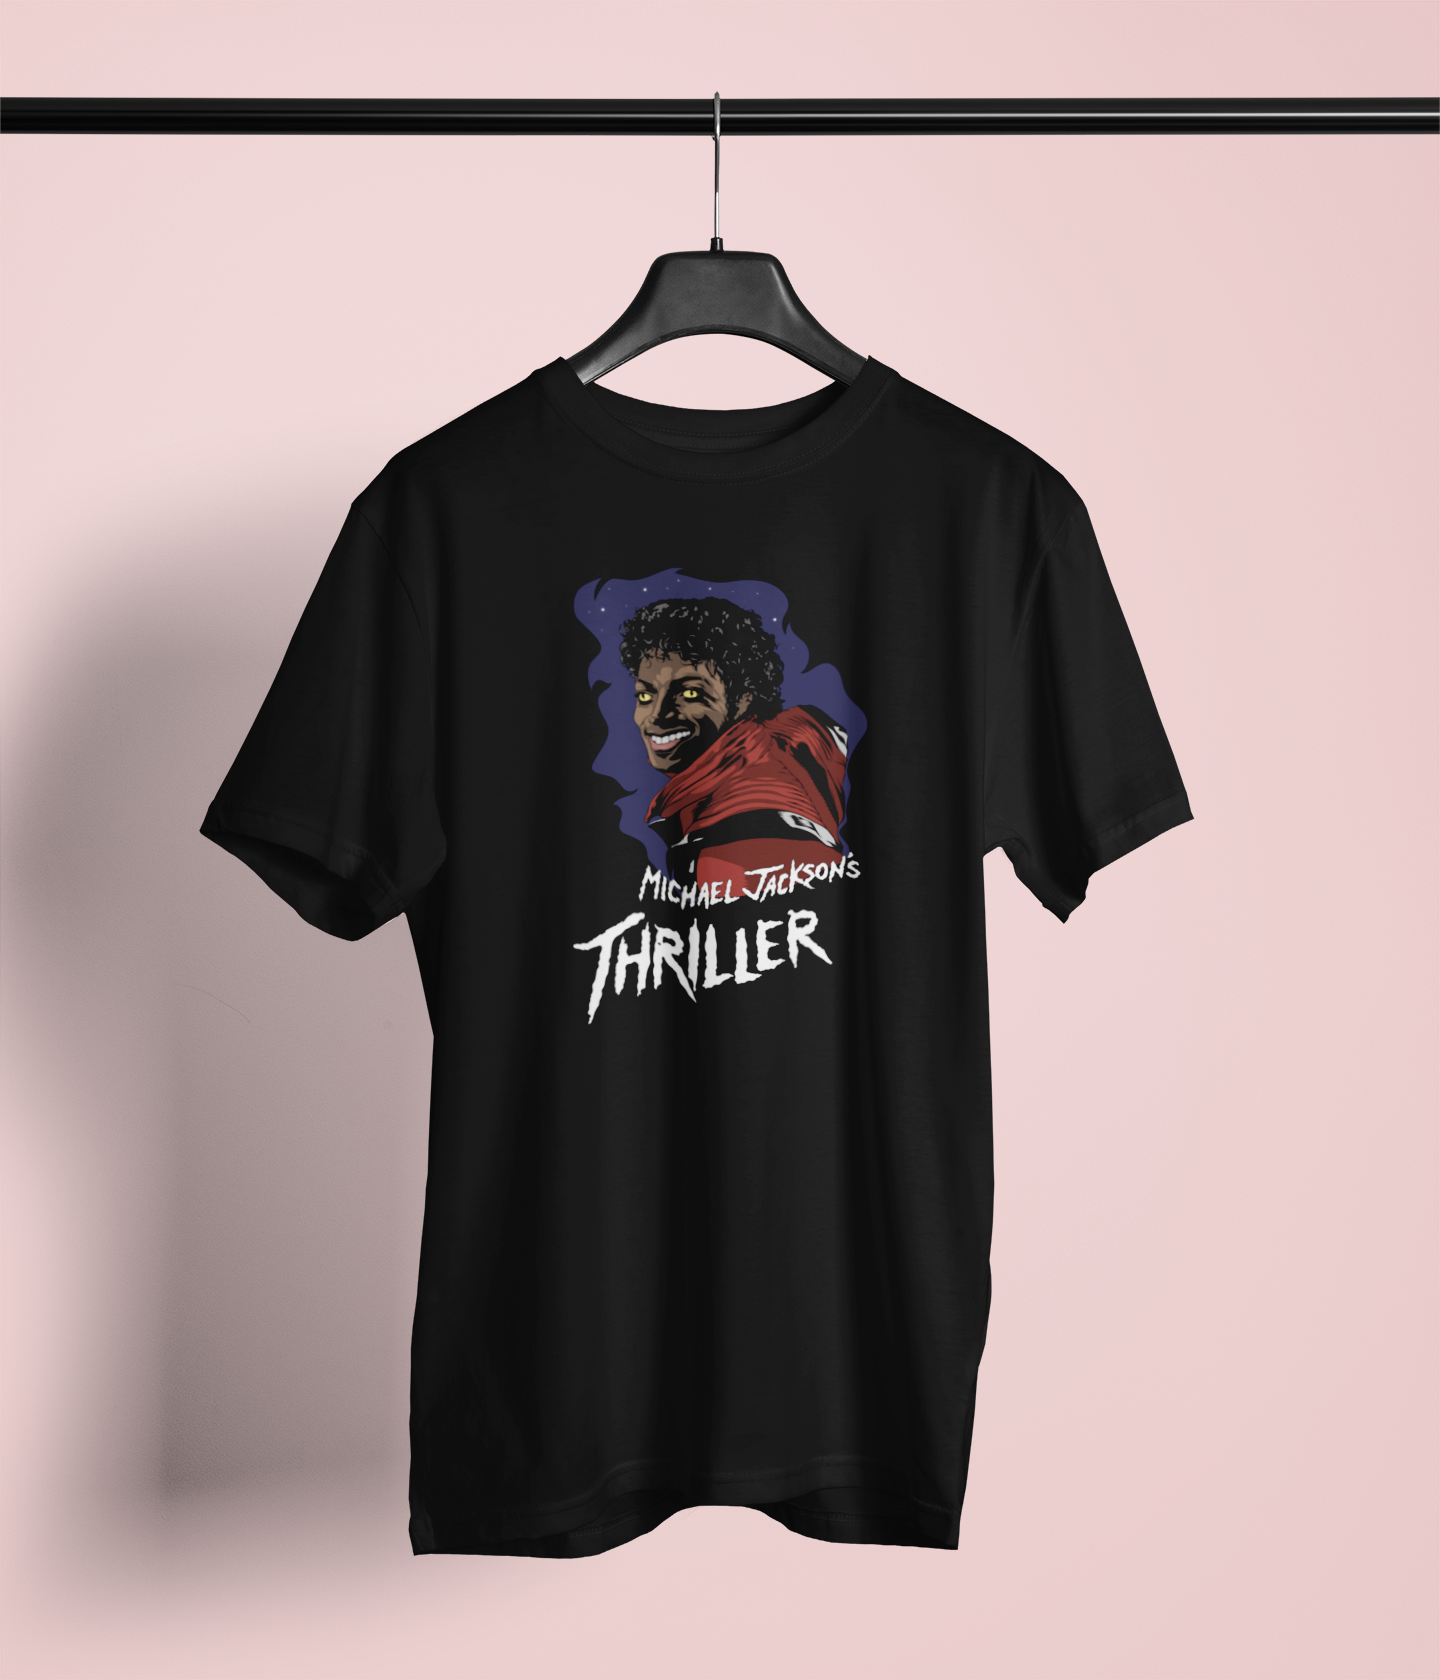 Camiseta Thriller "Michael Jackson" - Música